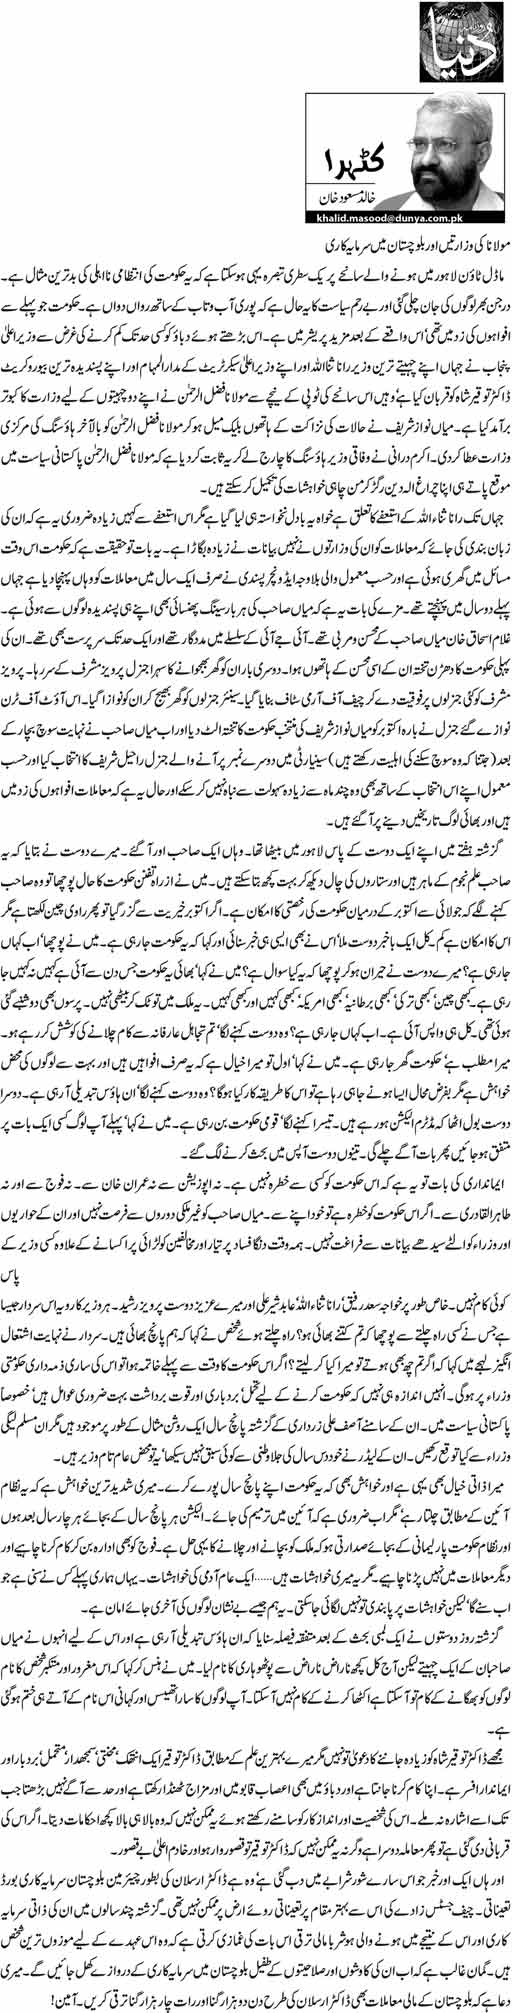 Print Media Coverage Daily Dunya - Khalid Masood